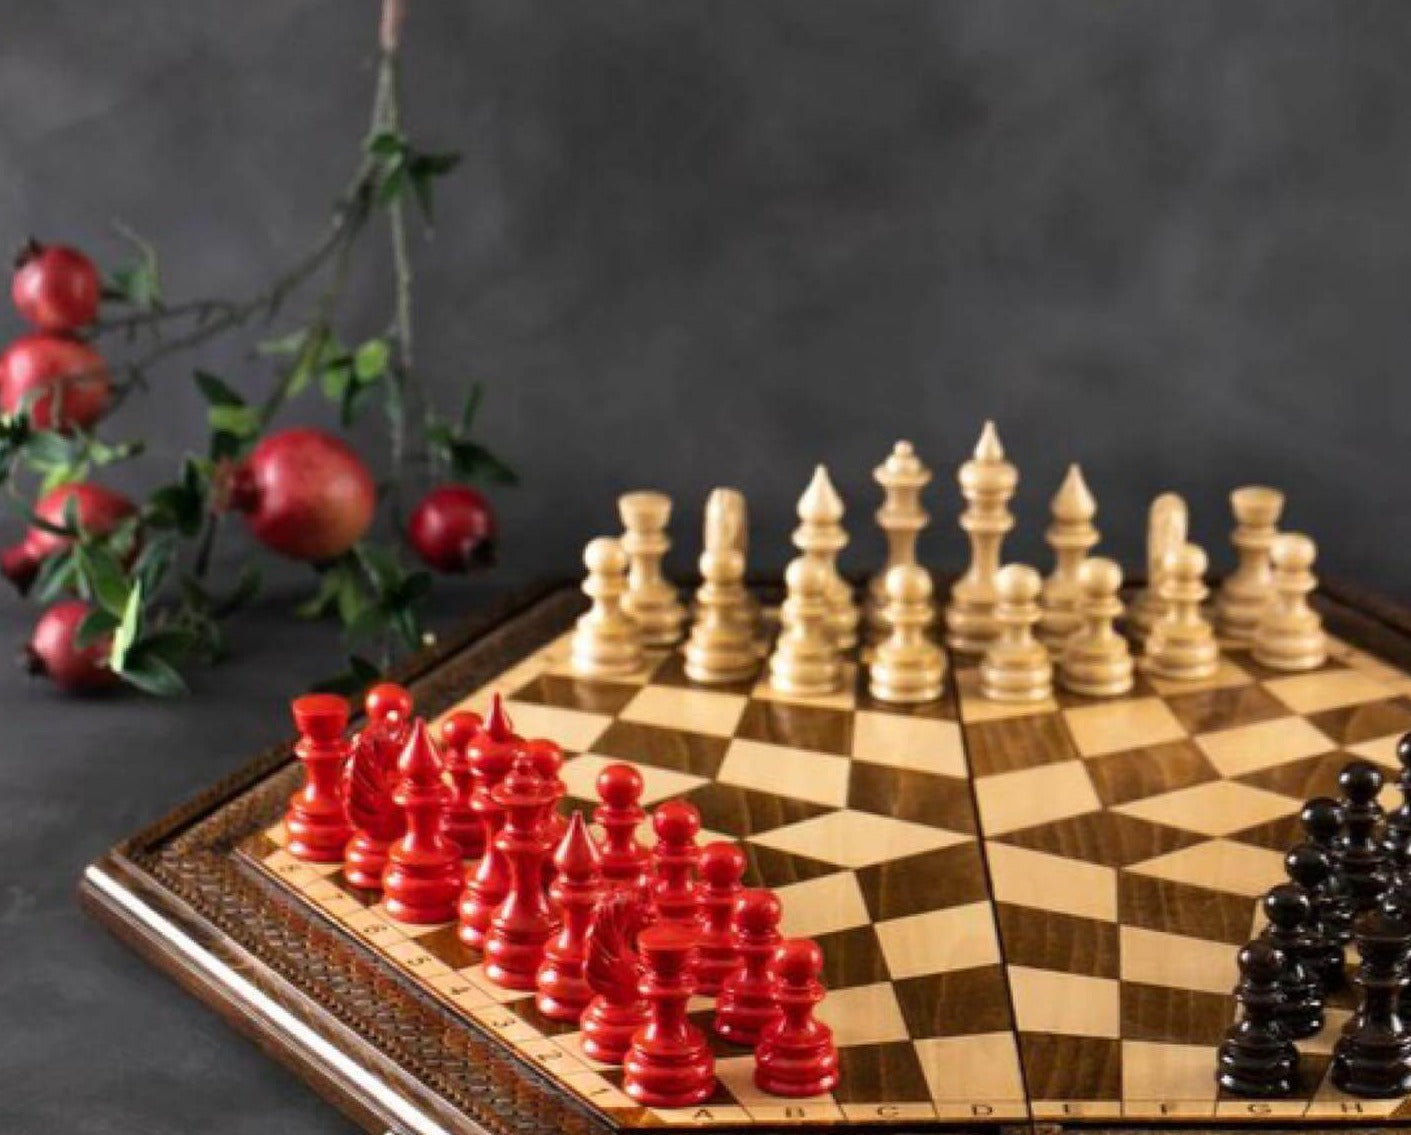 3 Personen Schach - Originelles Schachbrett für drei Spieler